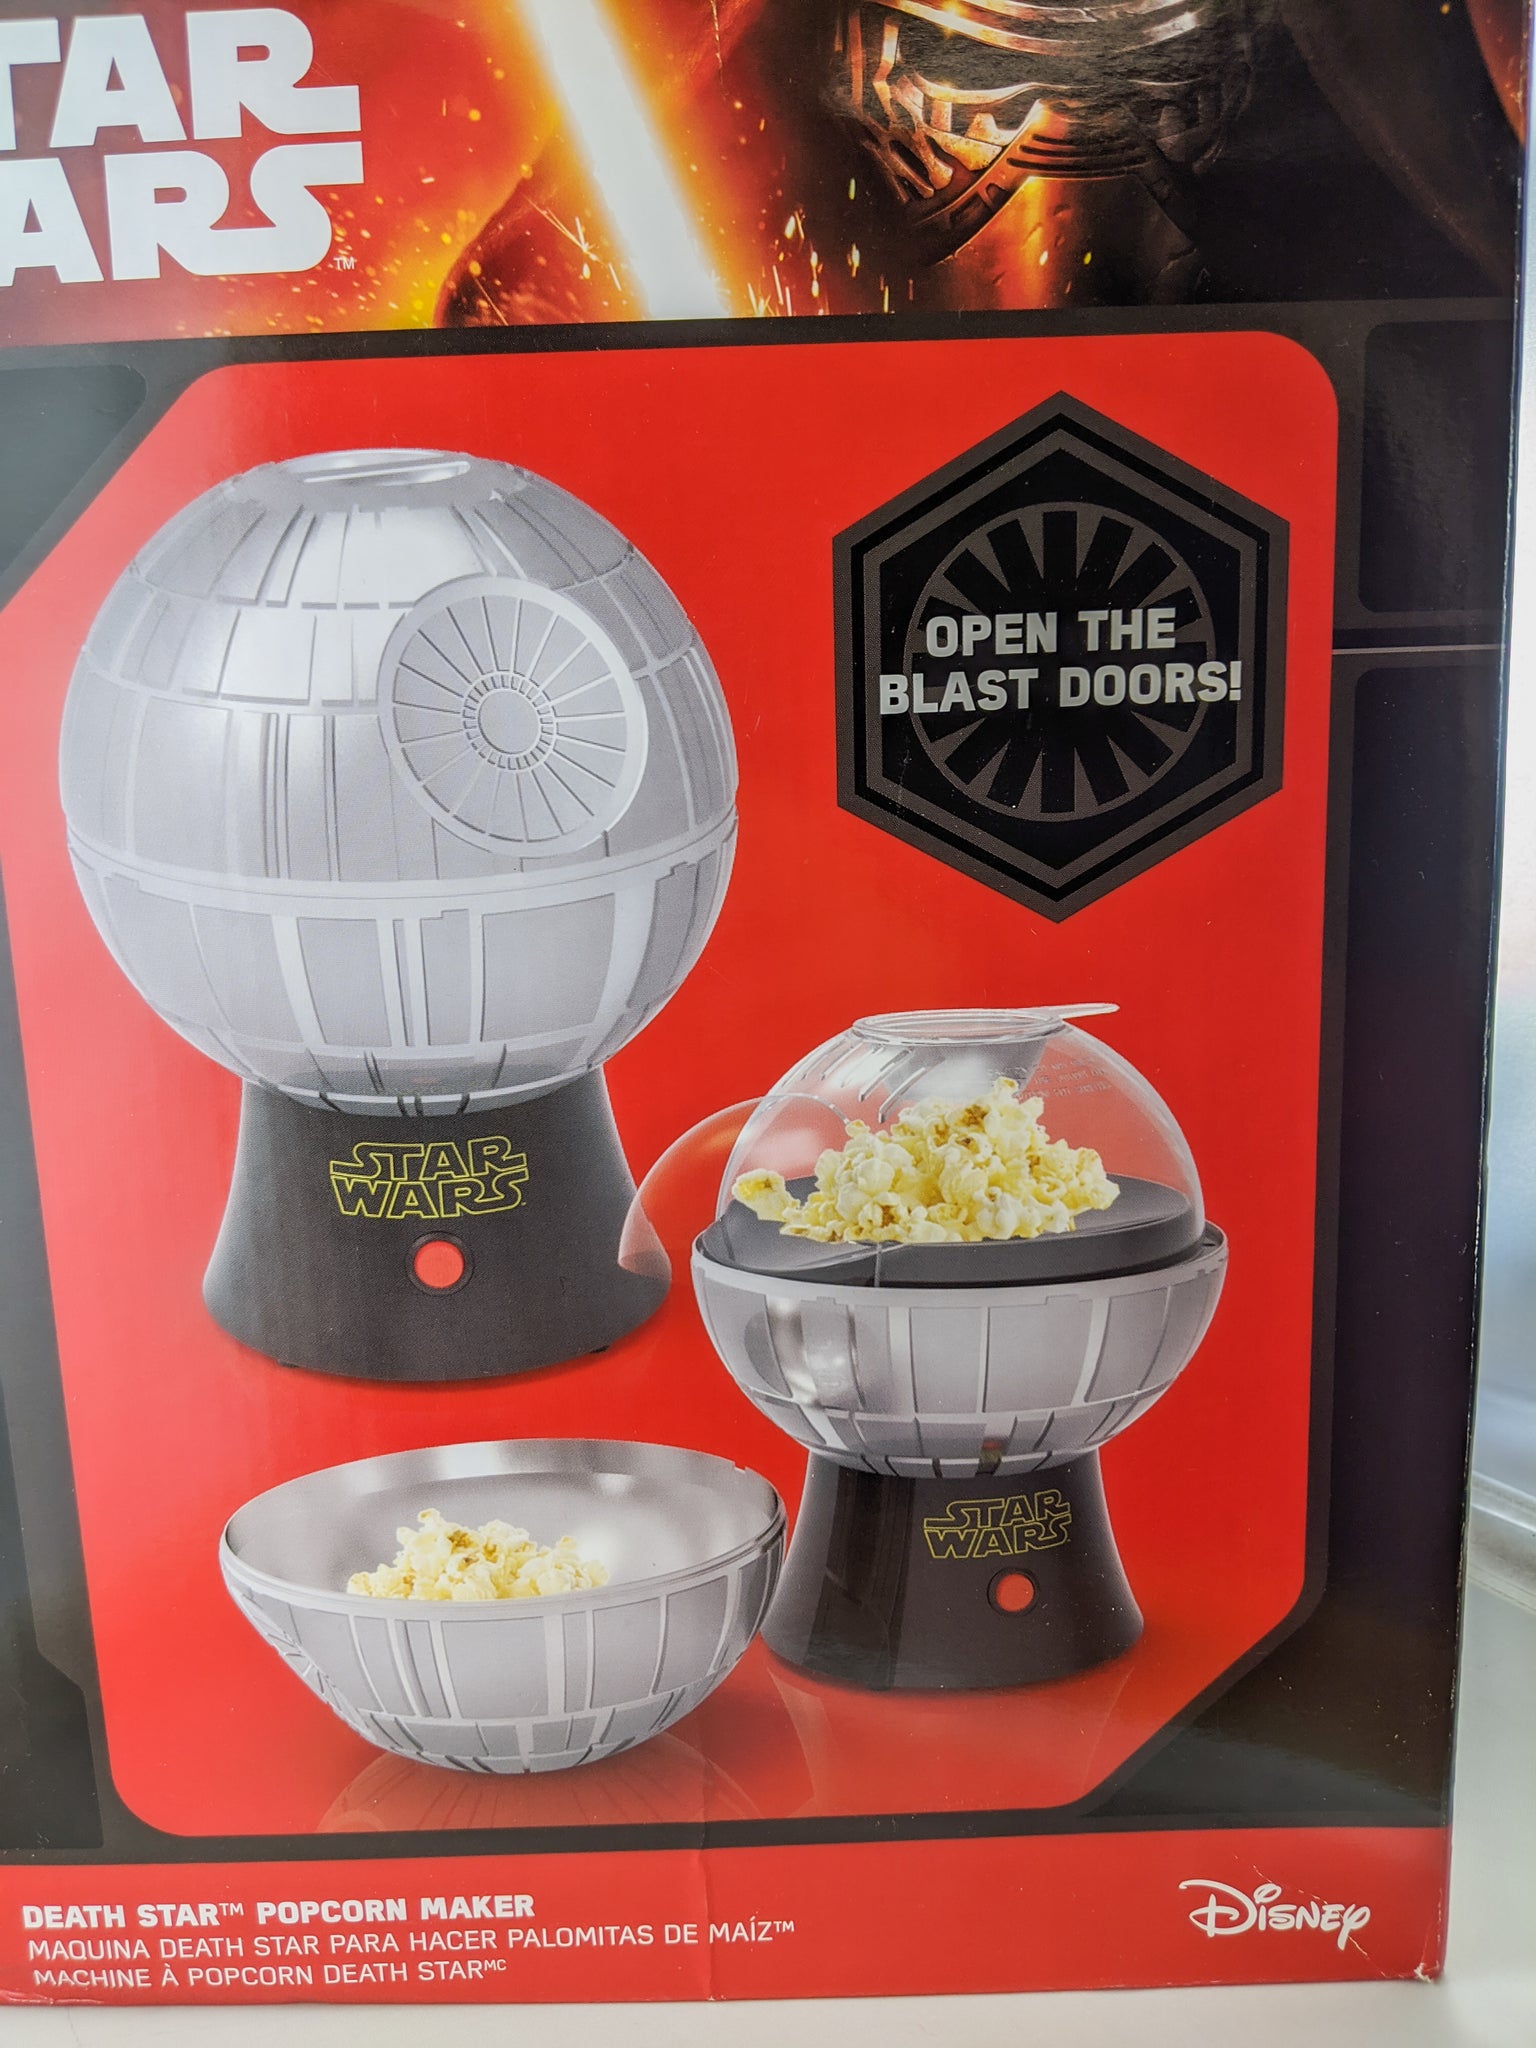 Star wars popcorn machine, General